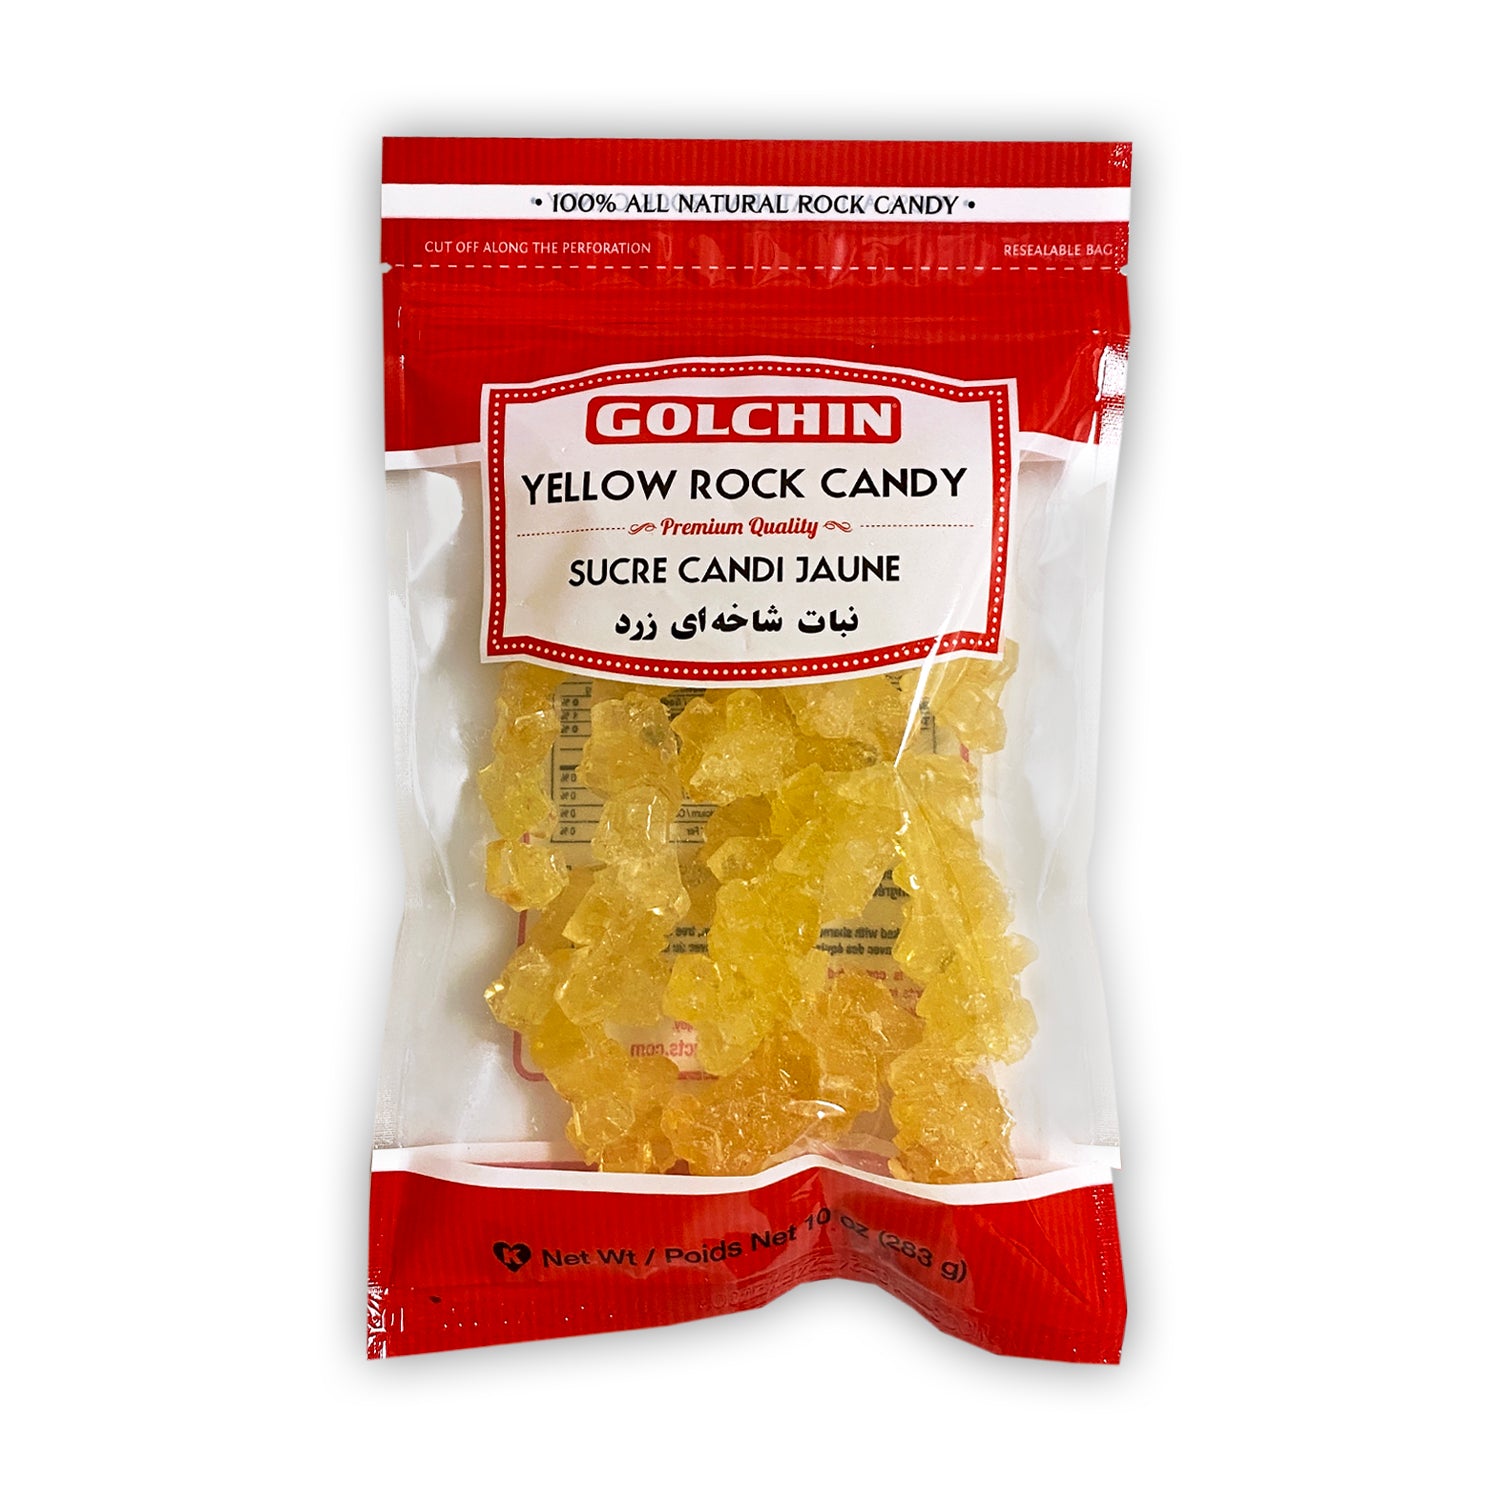 GOLCHIN YELLOW ROCK CANDY